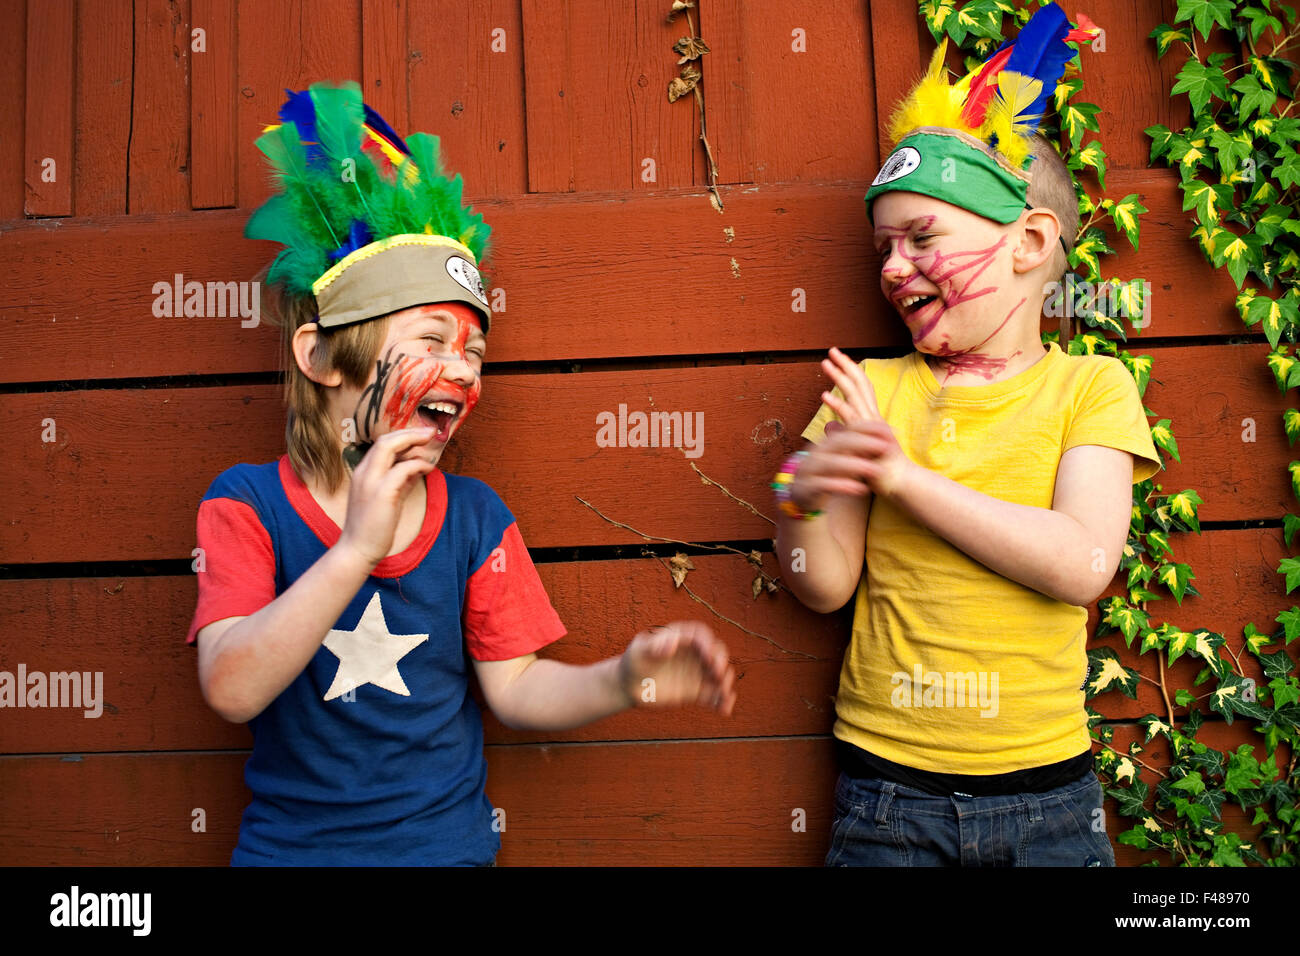 Muchachos jugando disfrazados como Indios, Suecia Fotografía de stock -  Alamy